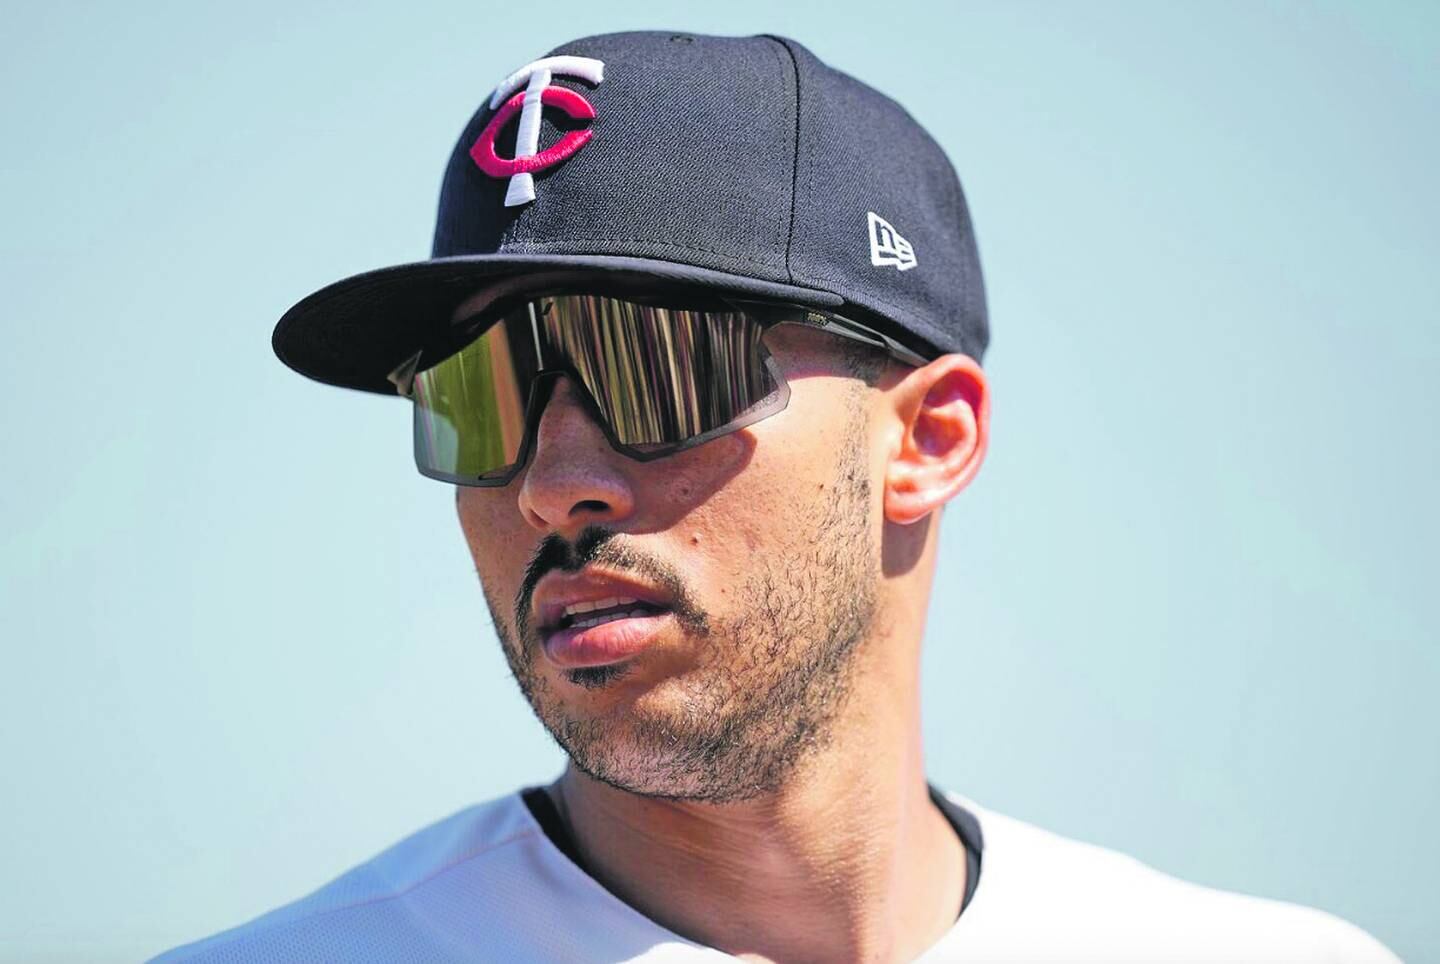 Carlos Correa en un close-up a su rostro, con gafas y una gorra de Los Mellizos.